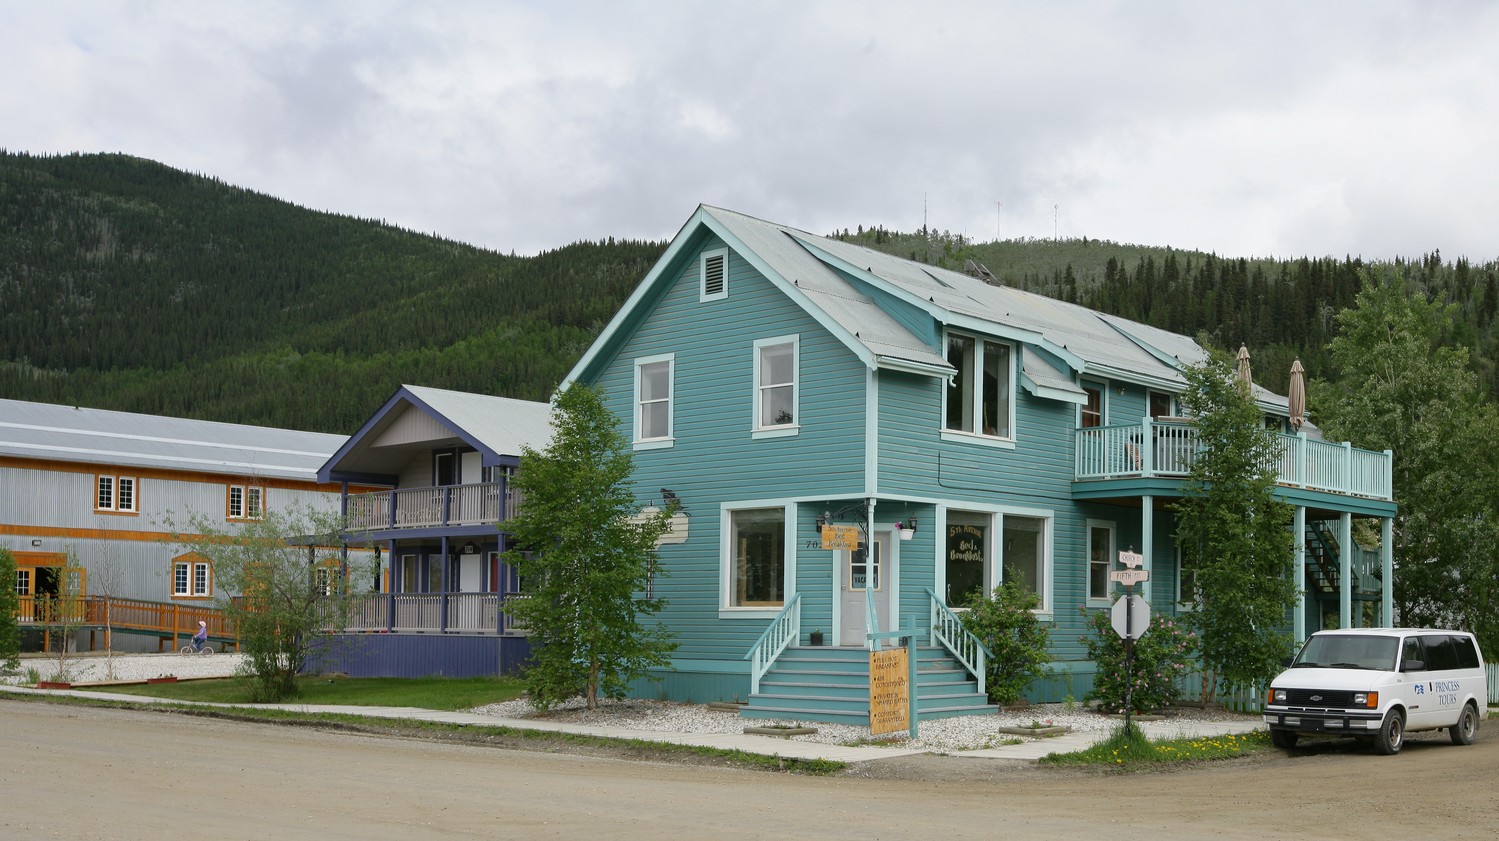 Day 7 - Dawson City, Yukon